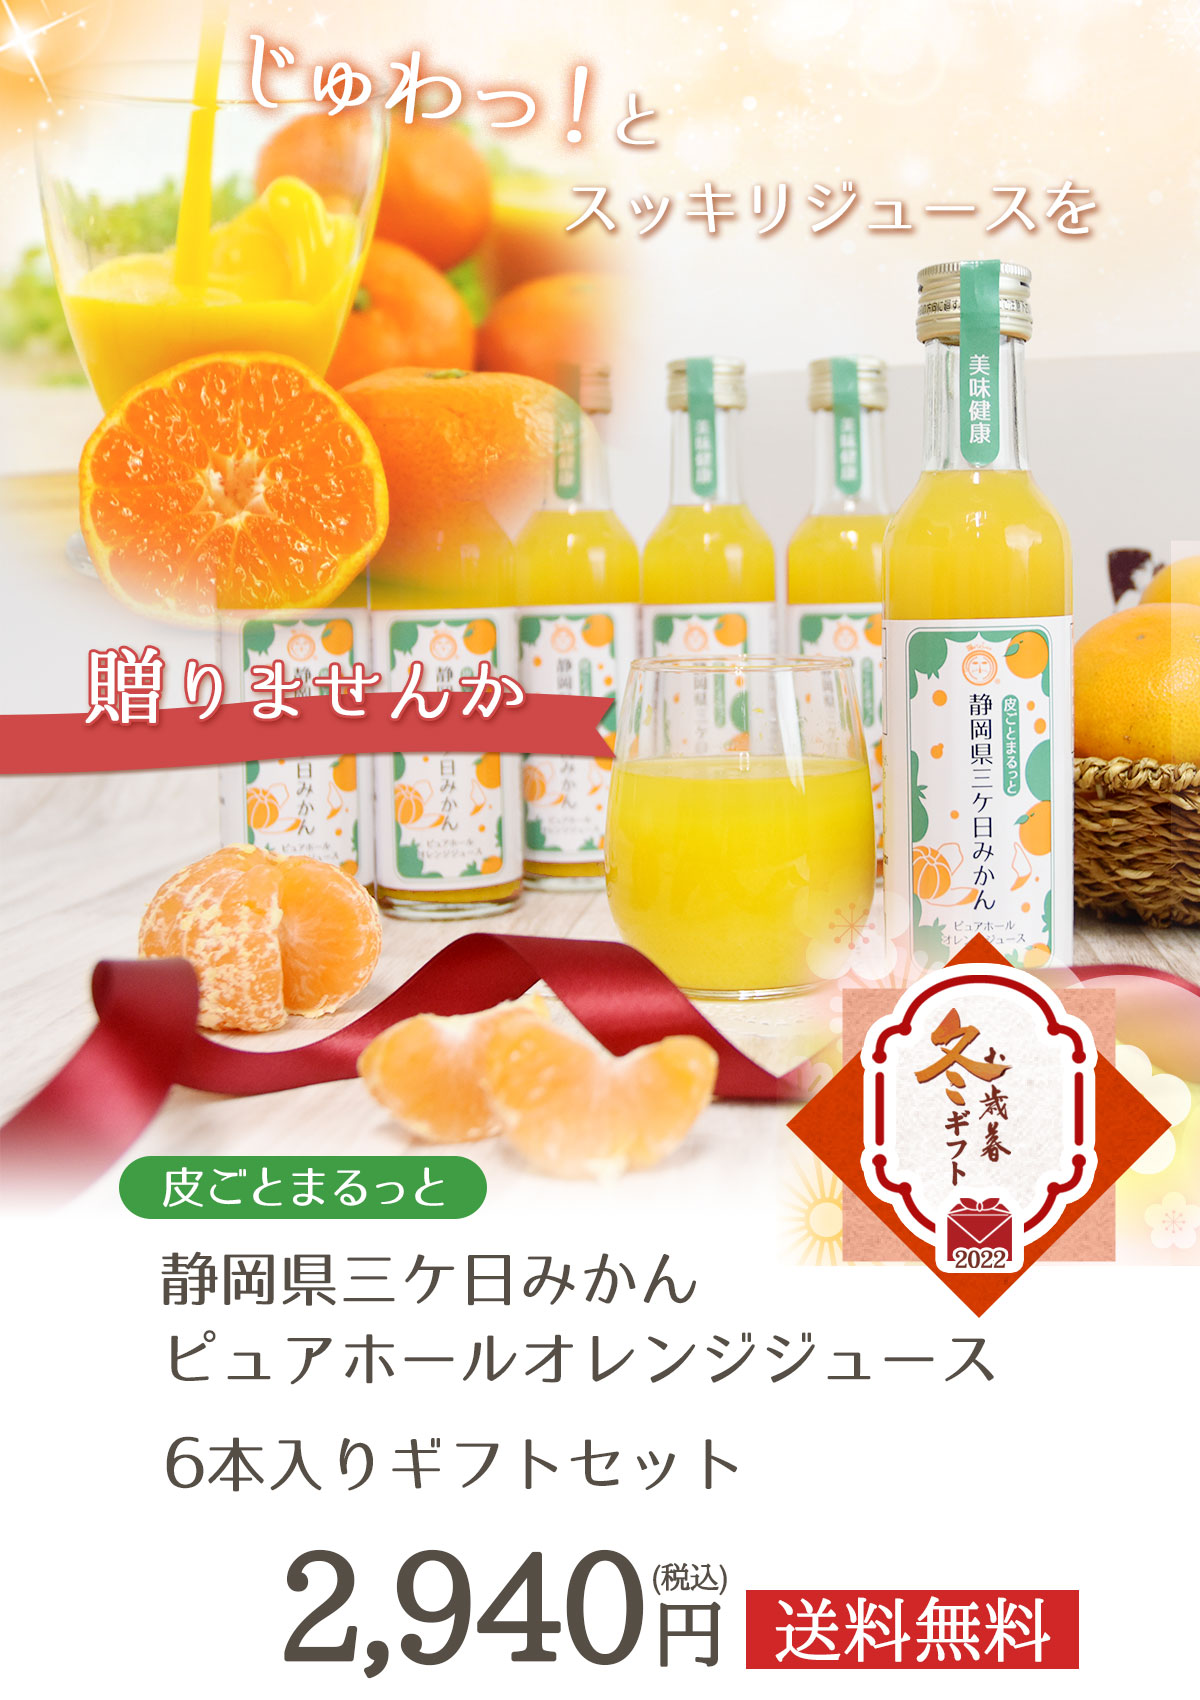 皮ごとまるっと 静岡県三ケ日みかんピュアホールオレンジジュース6本入りギフト